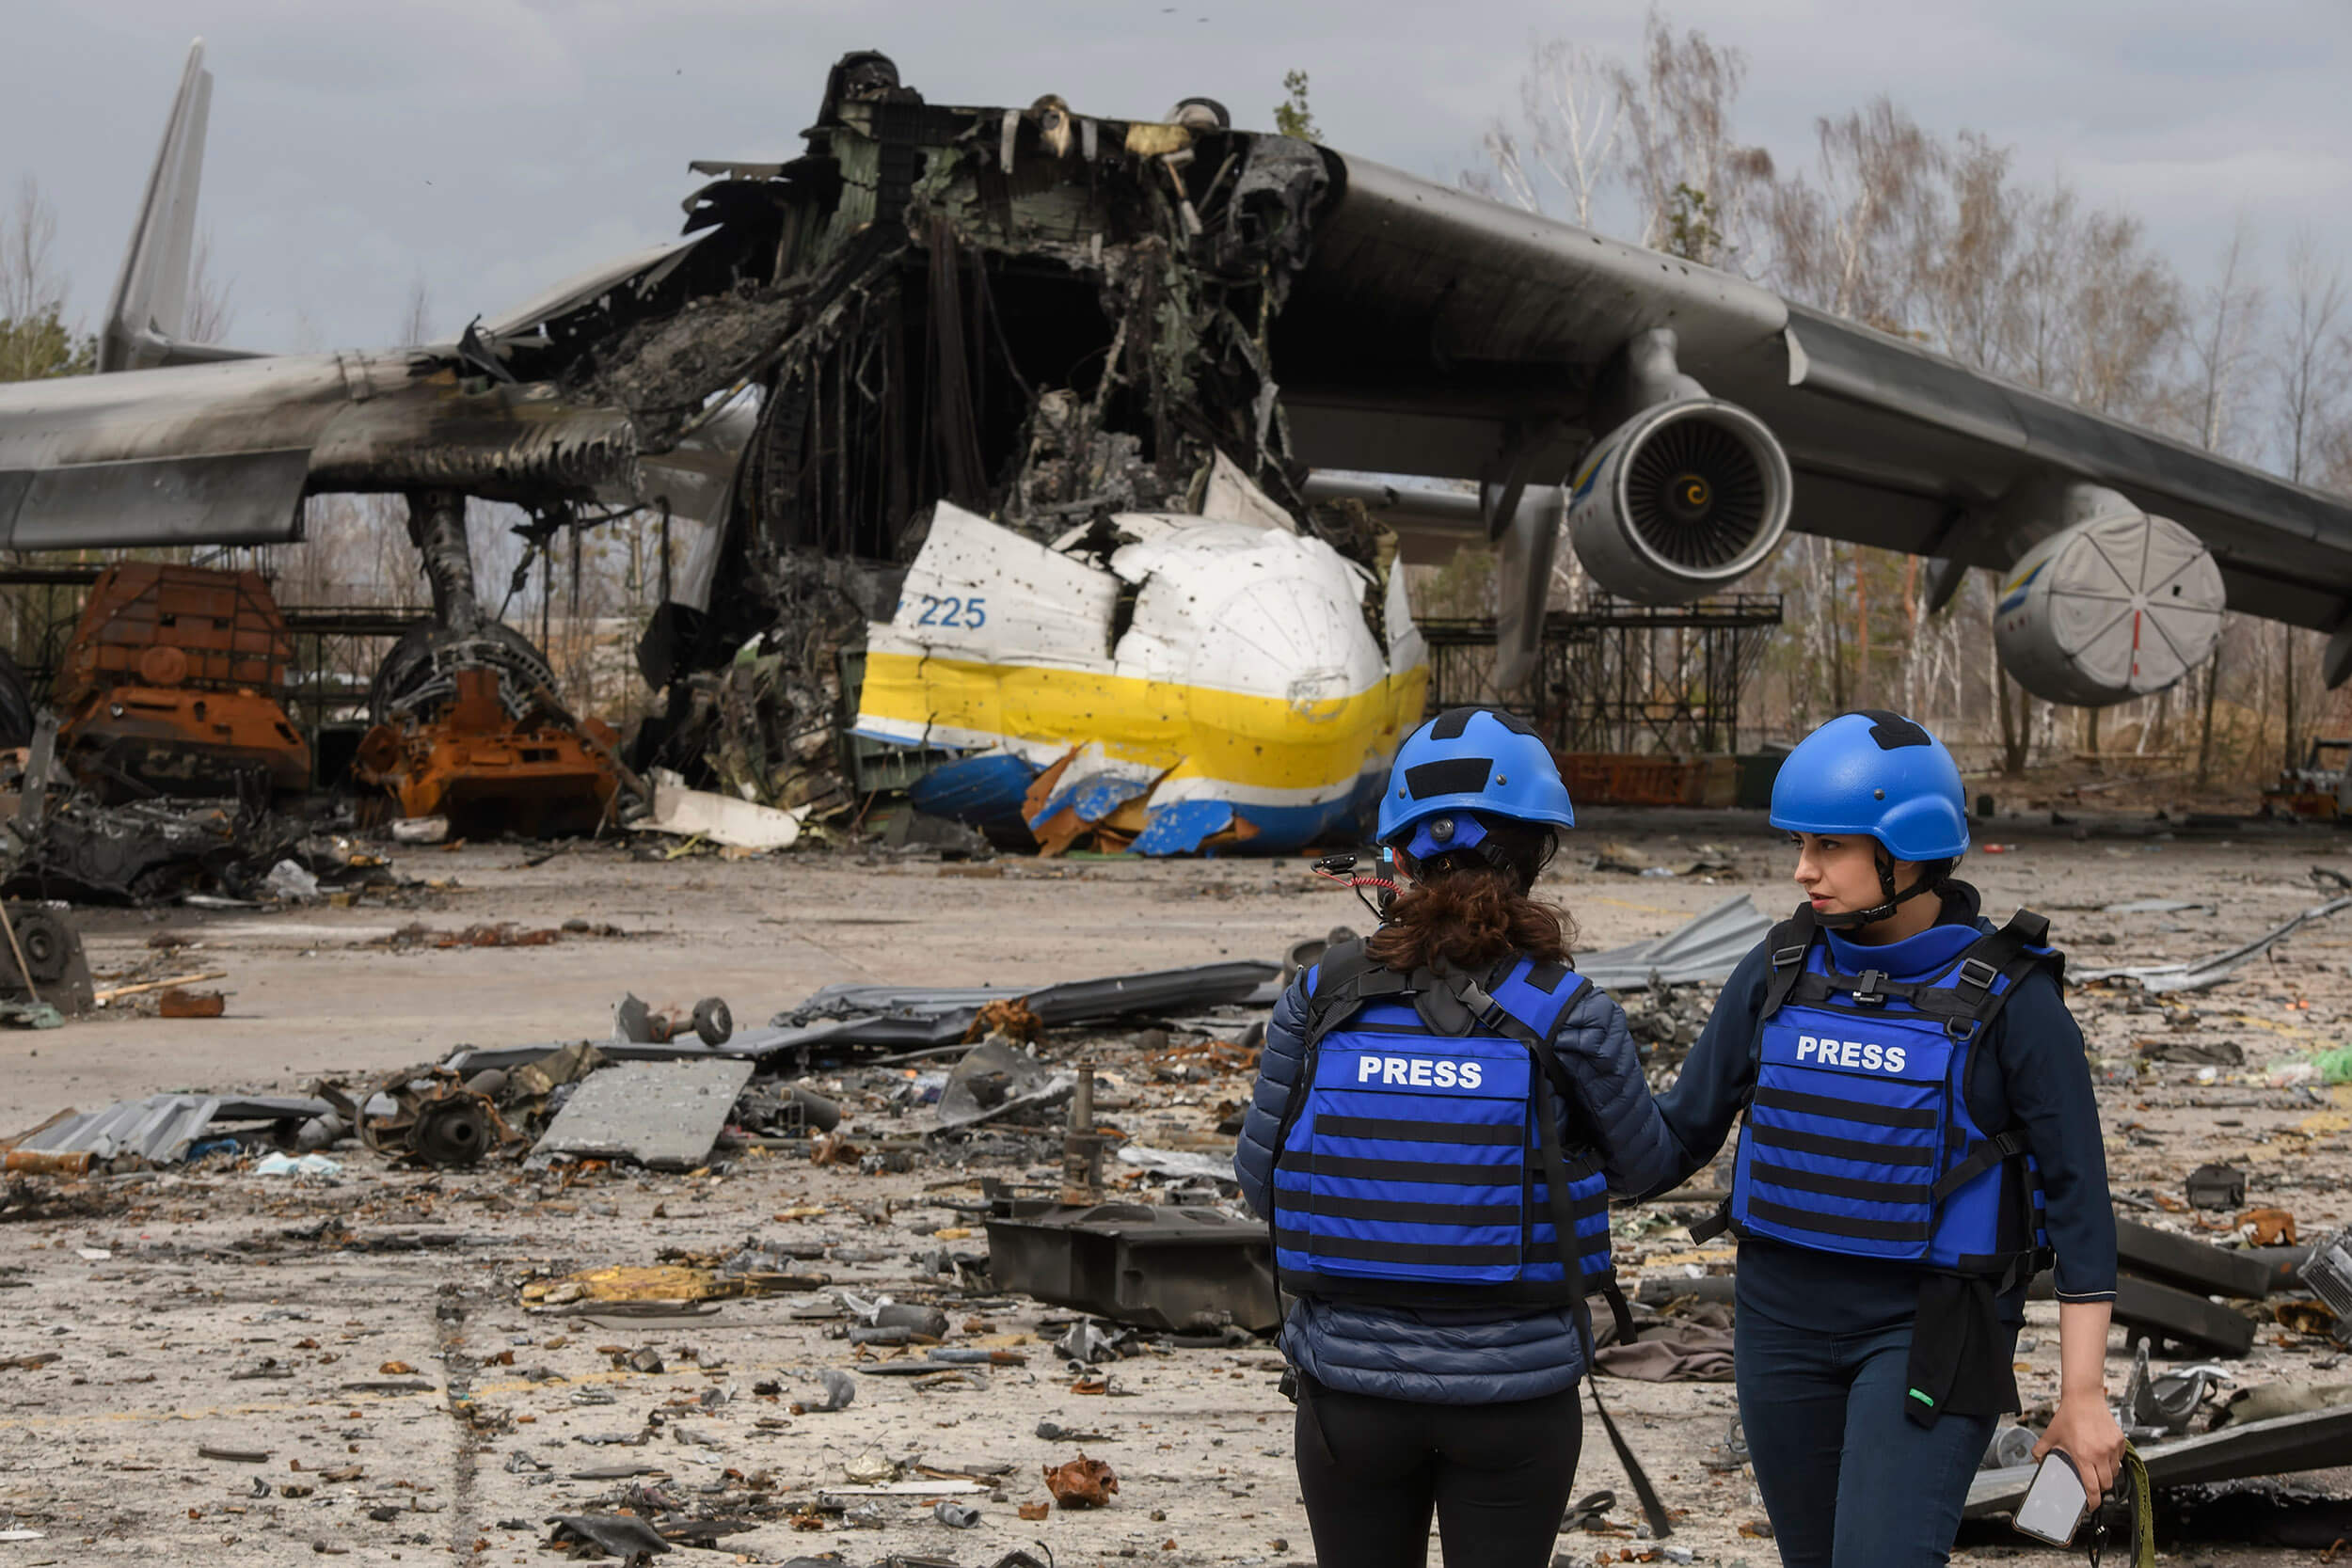 Emergency safety work for journalists in Ukraine